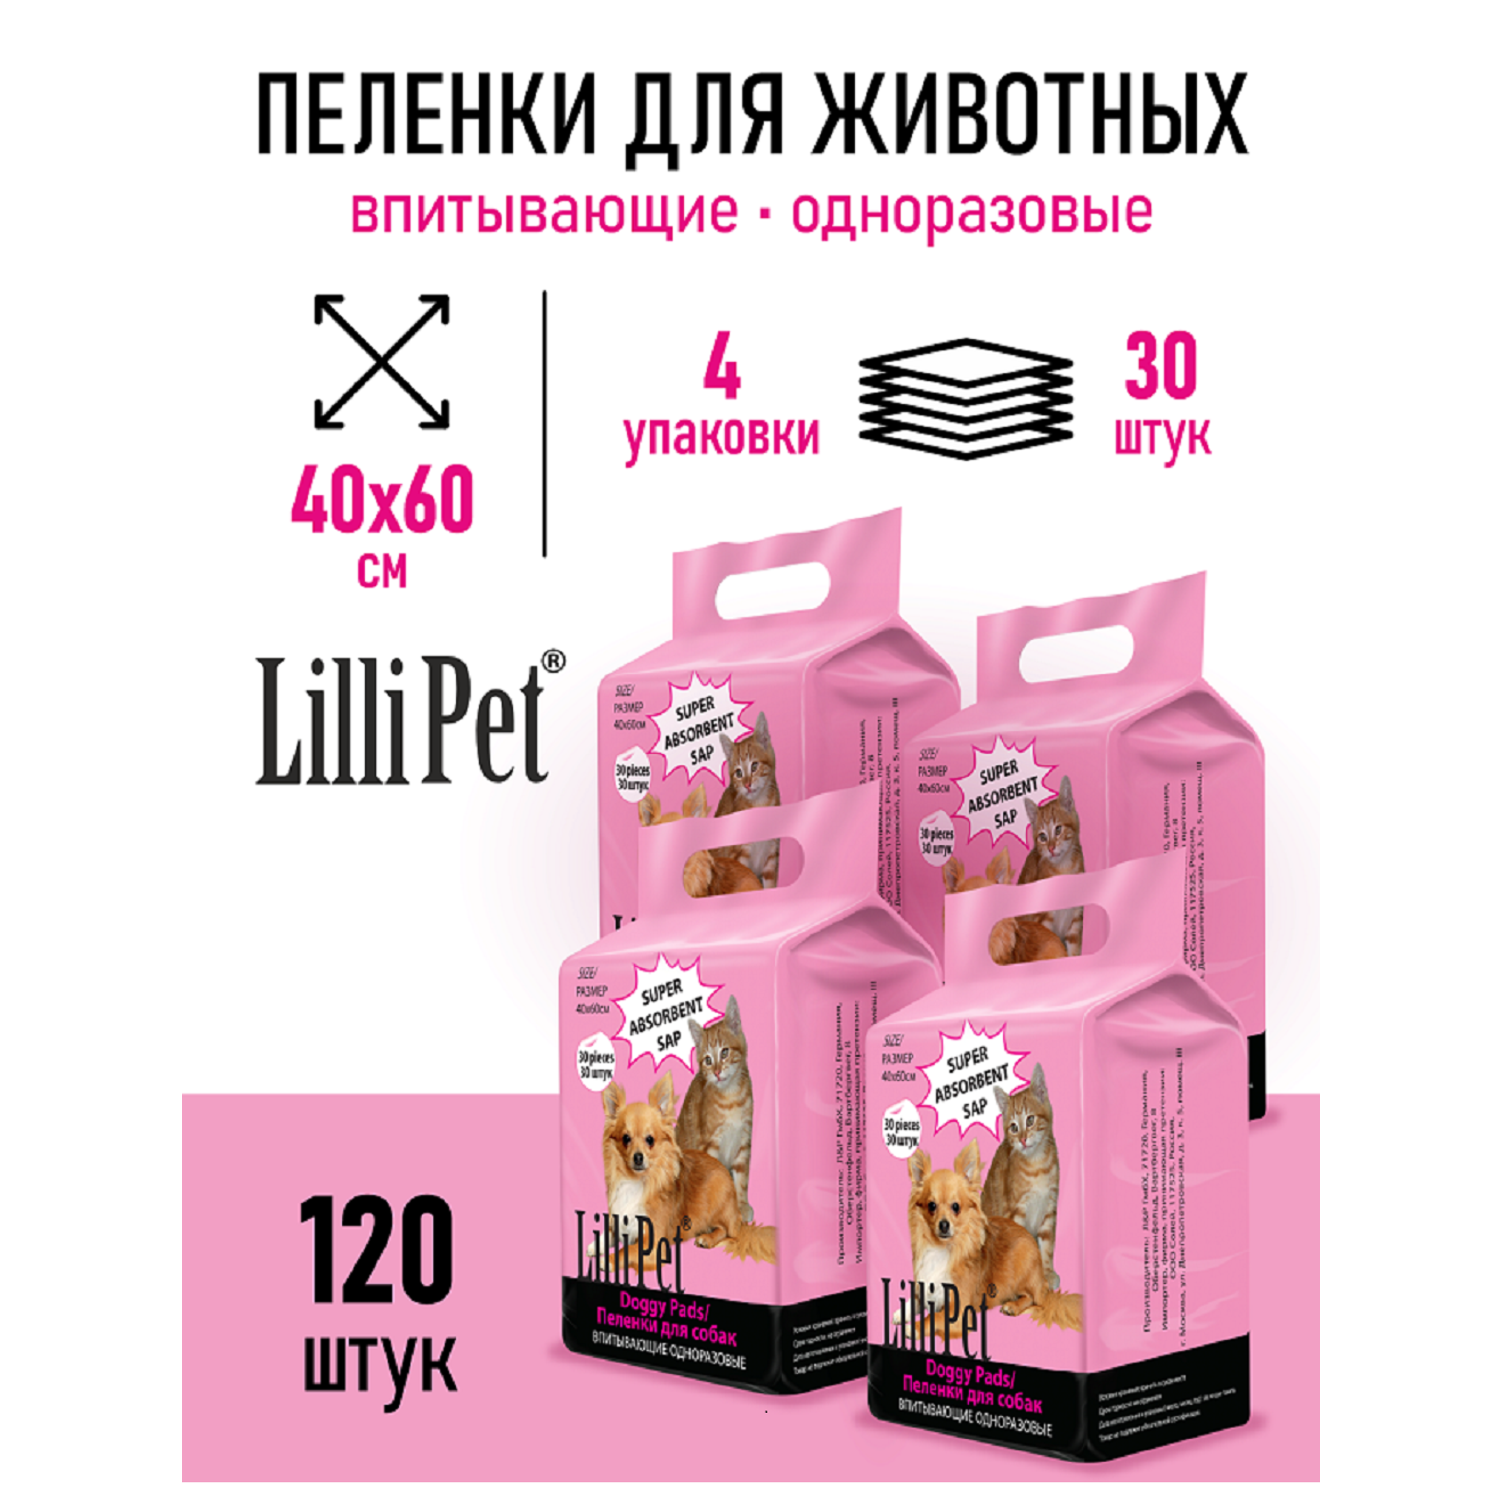 Пеленки для животных Lilli Pet 120 шт 40*60 см - фото 1